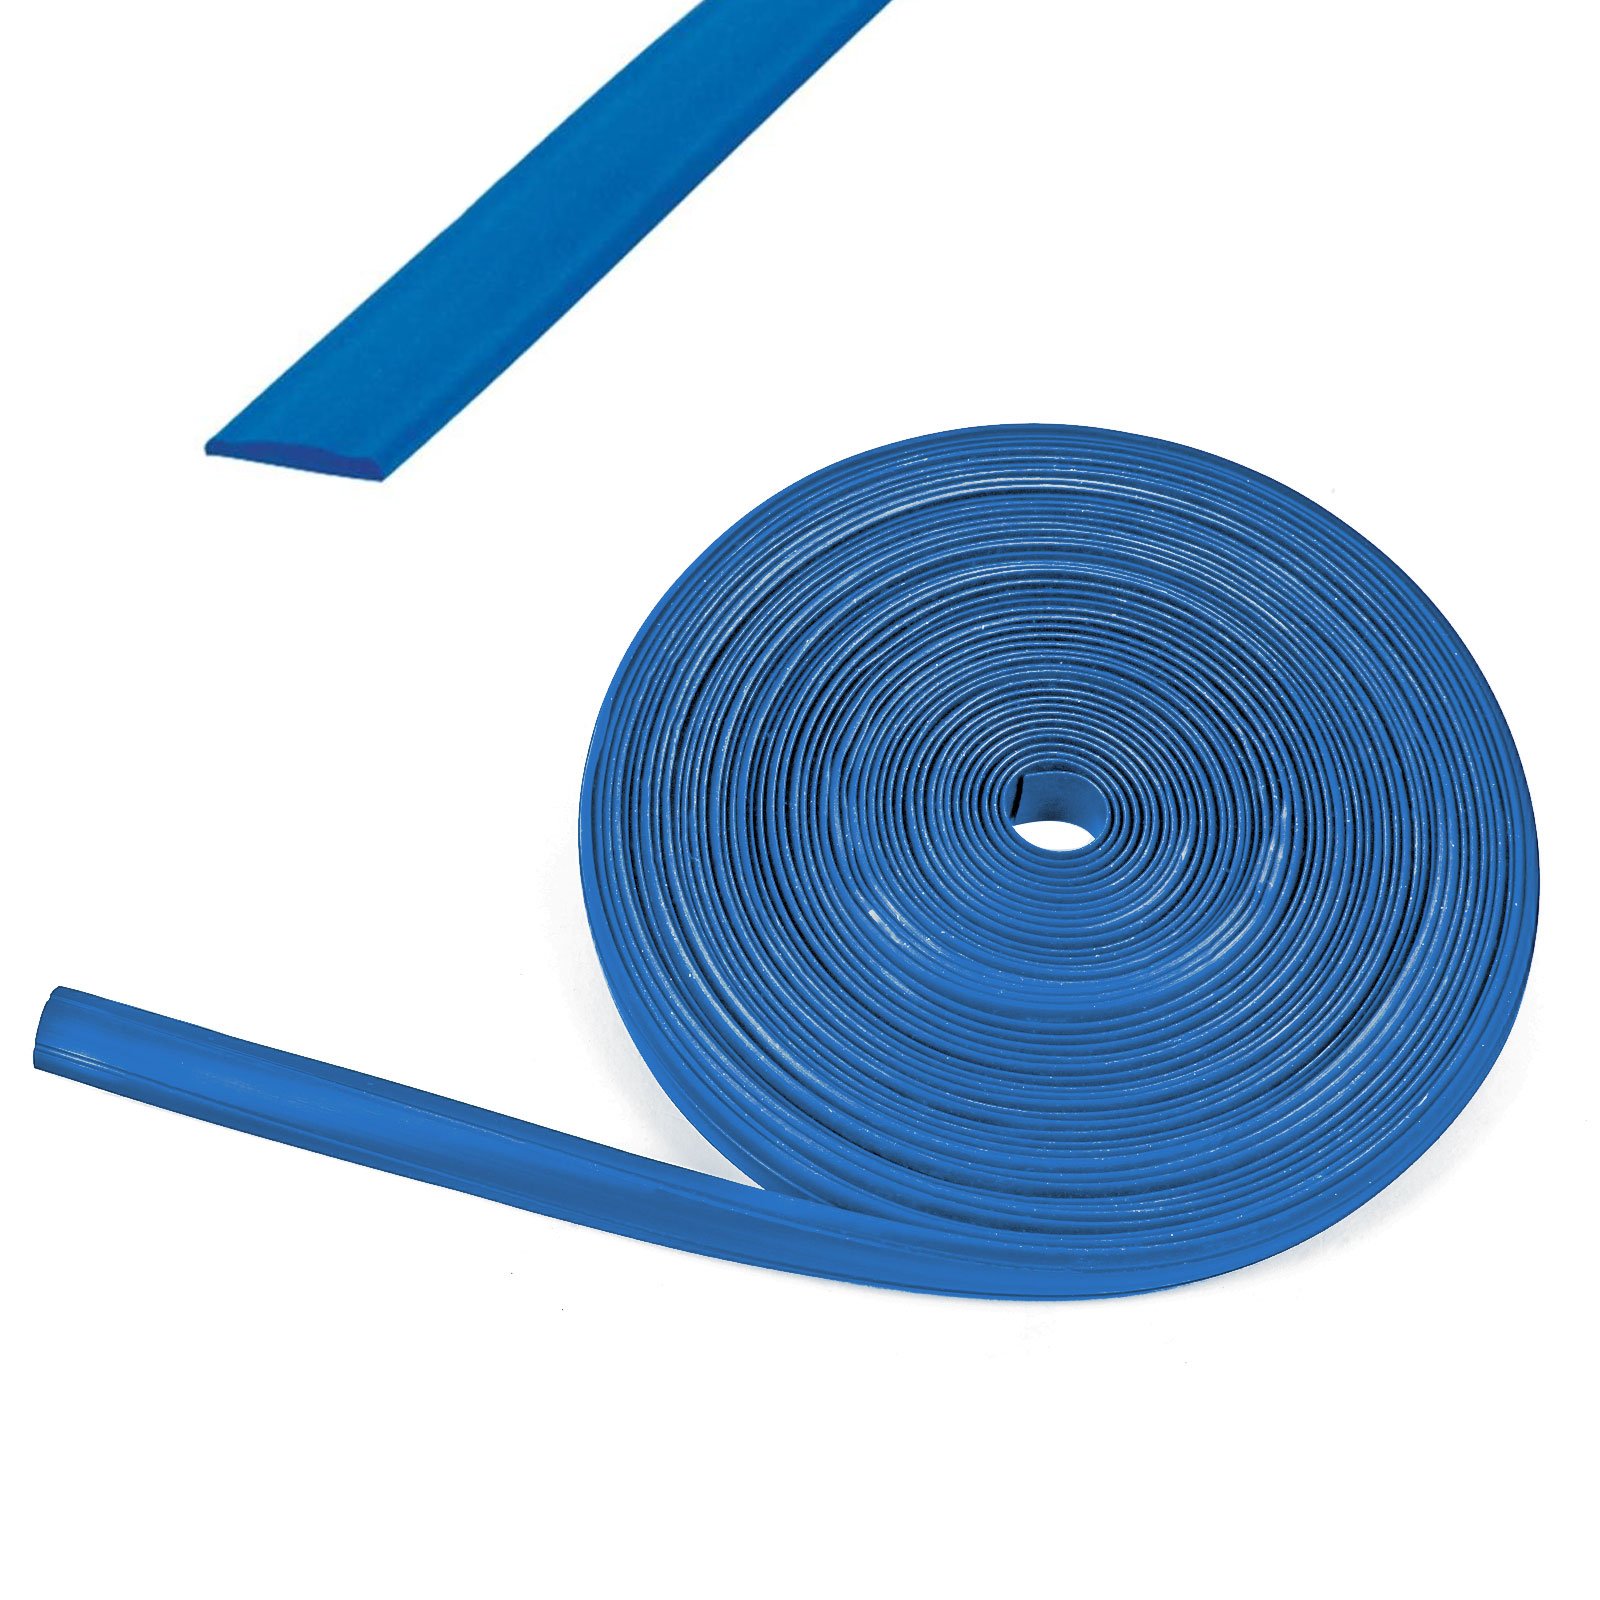 Kederband 12 mm blau Kunststoff Leistenfüller für Wohnwagen und Wohnmobil von wamovo